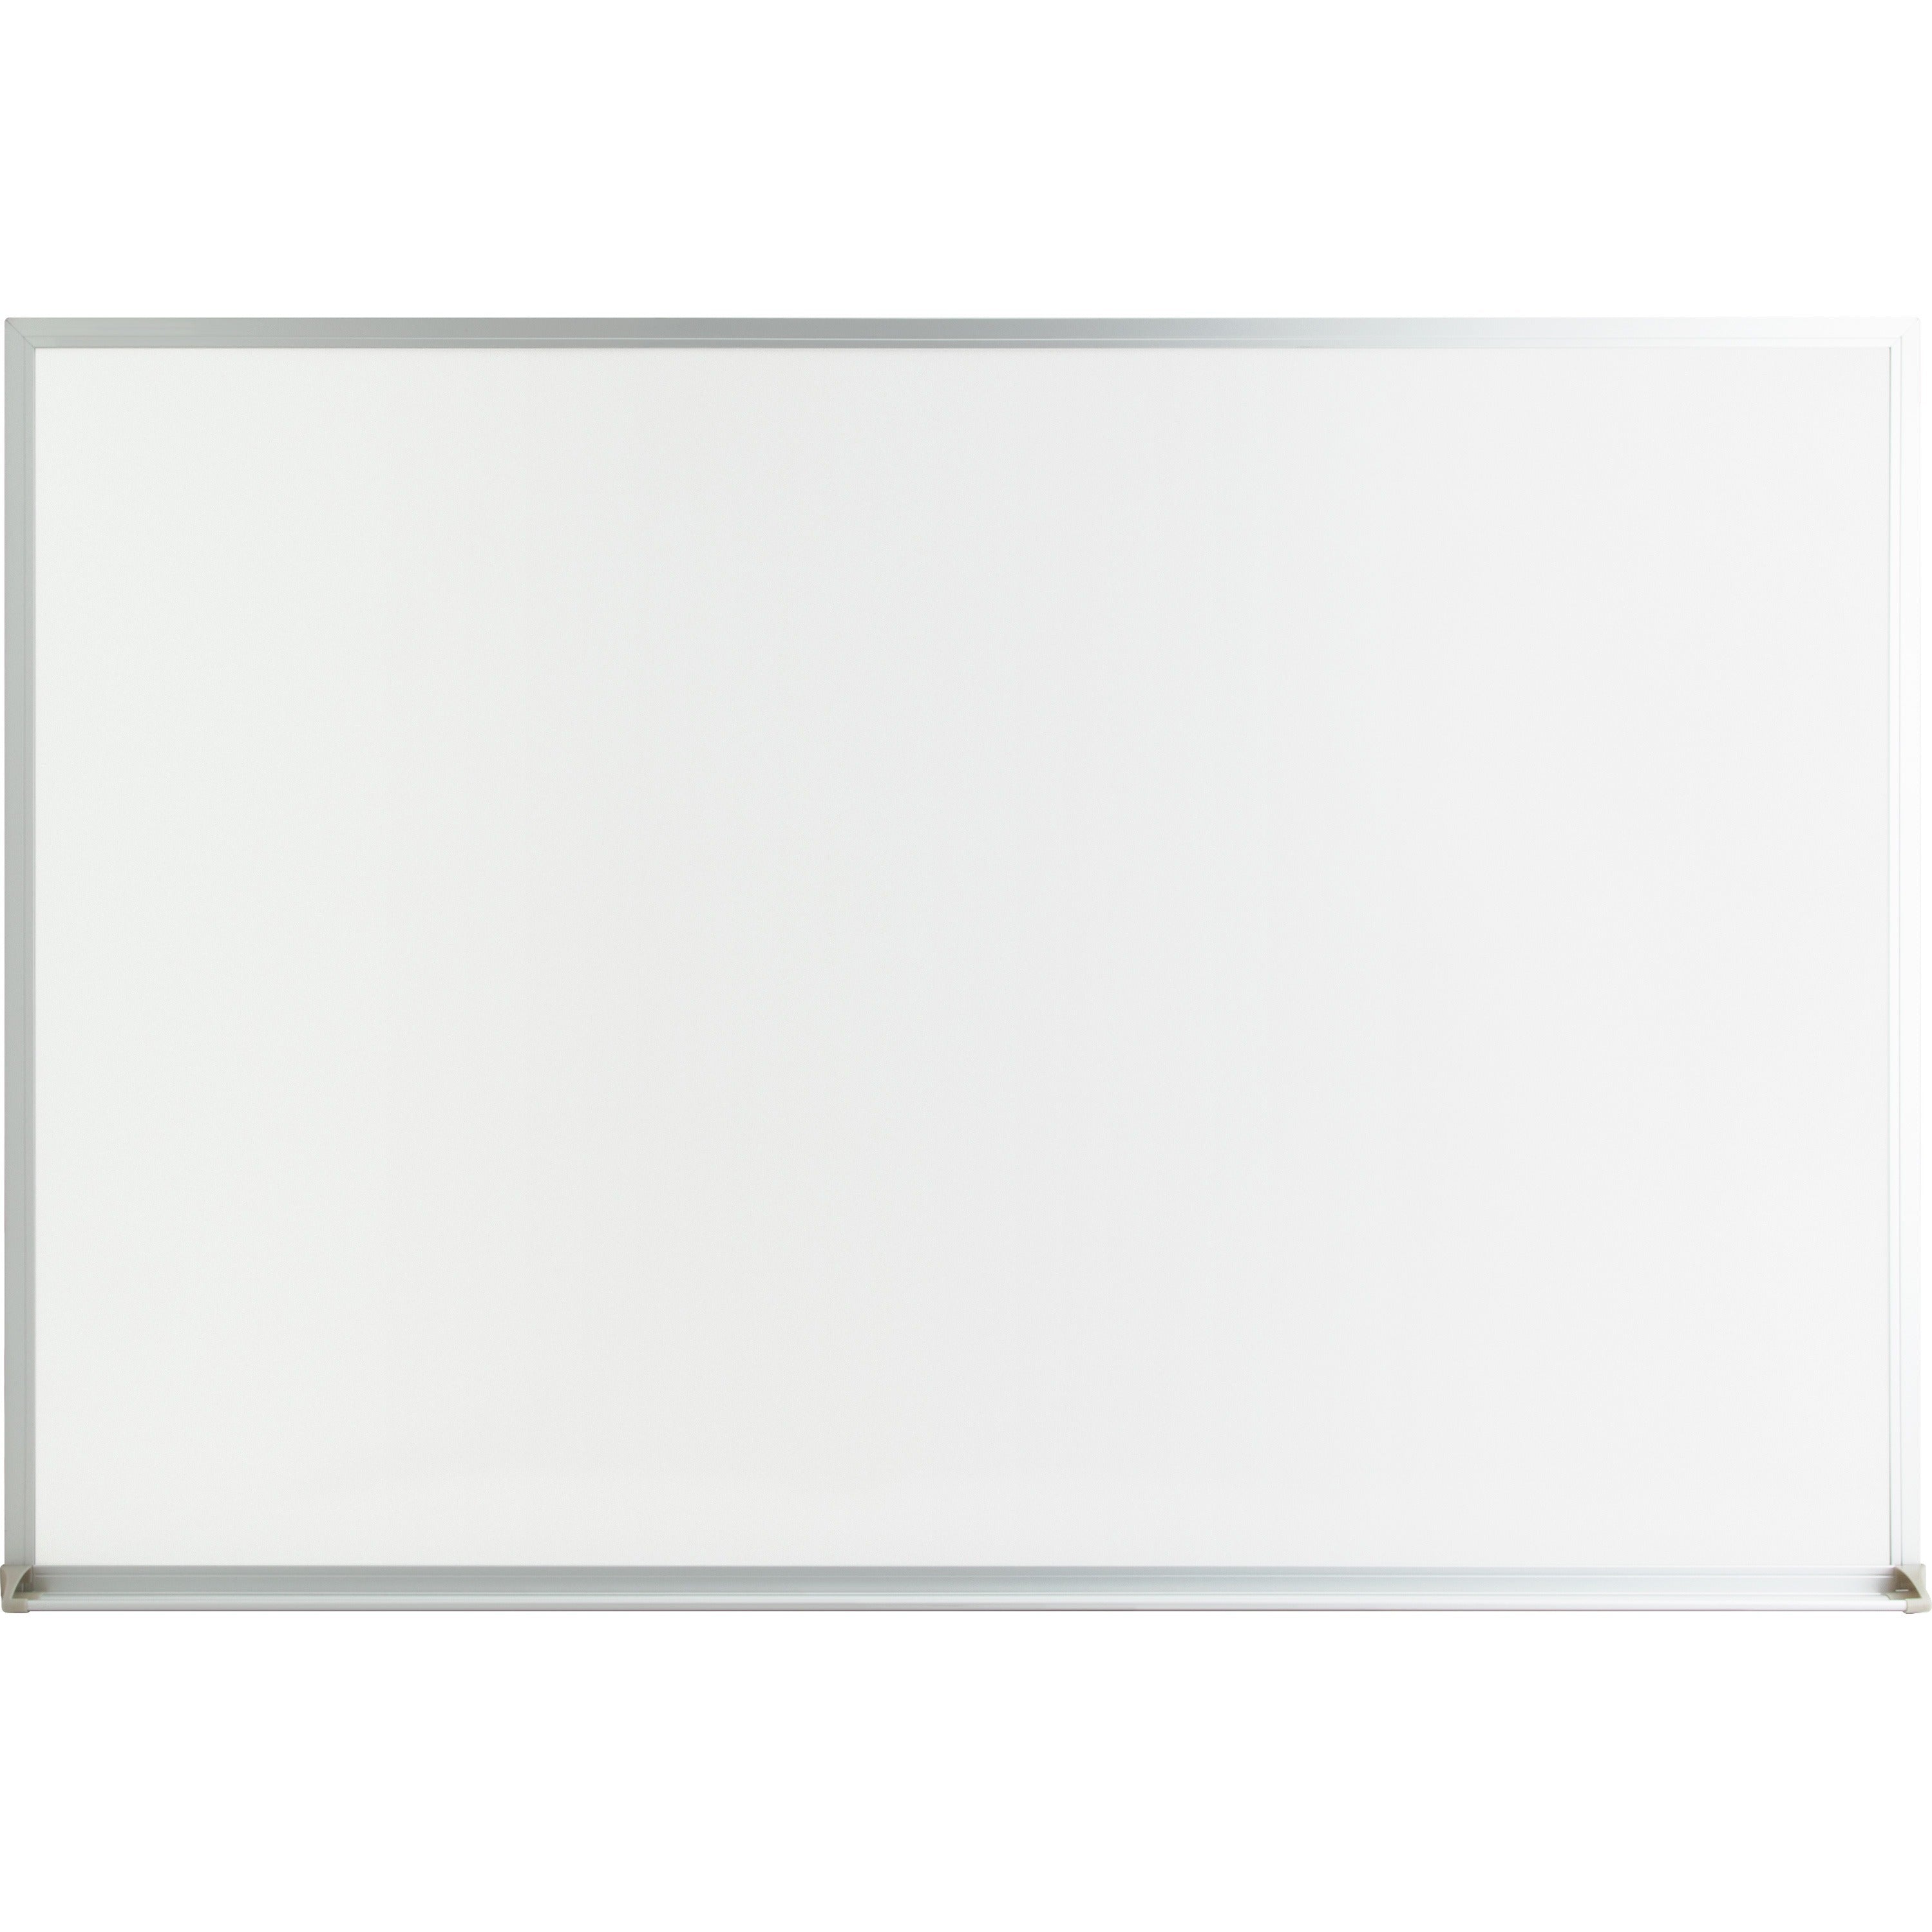 lorell-economy-dry-erase-board-48-4-ft-width-x-36-3-ft-height-white-melamine-surface-white-aluminum-frame-rectangle-1-each_llr19771 - 1